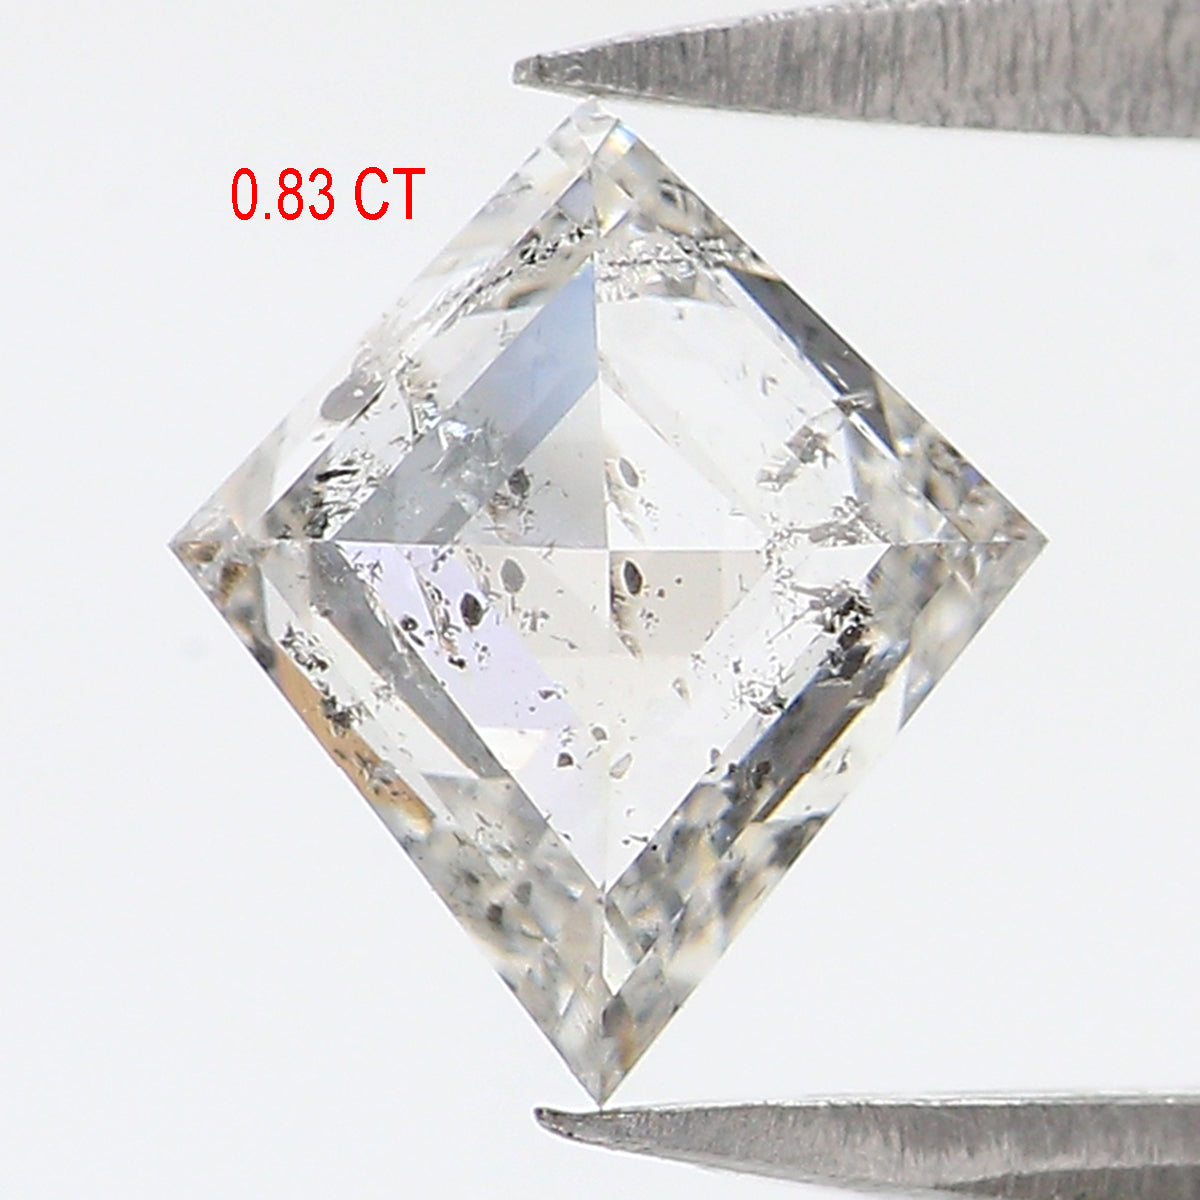 0.83 CT Natural Loose Kite Shape Diamond White - F Color Kite Cut Diamond 7.45 MM Natural Diamond White - F Kite Rose Cut Diamond QL2628